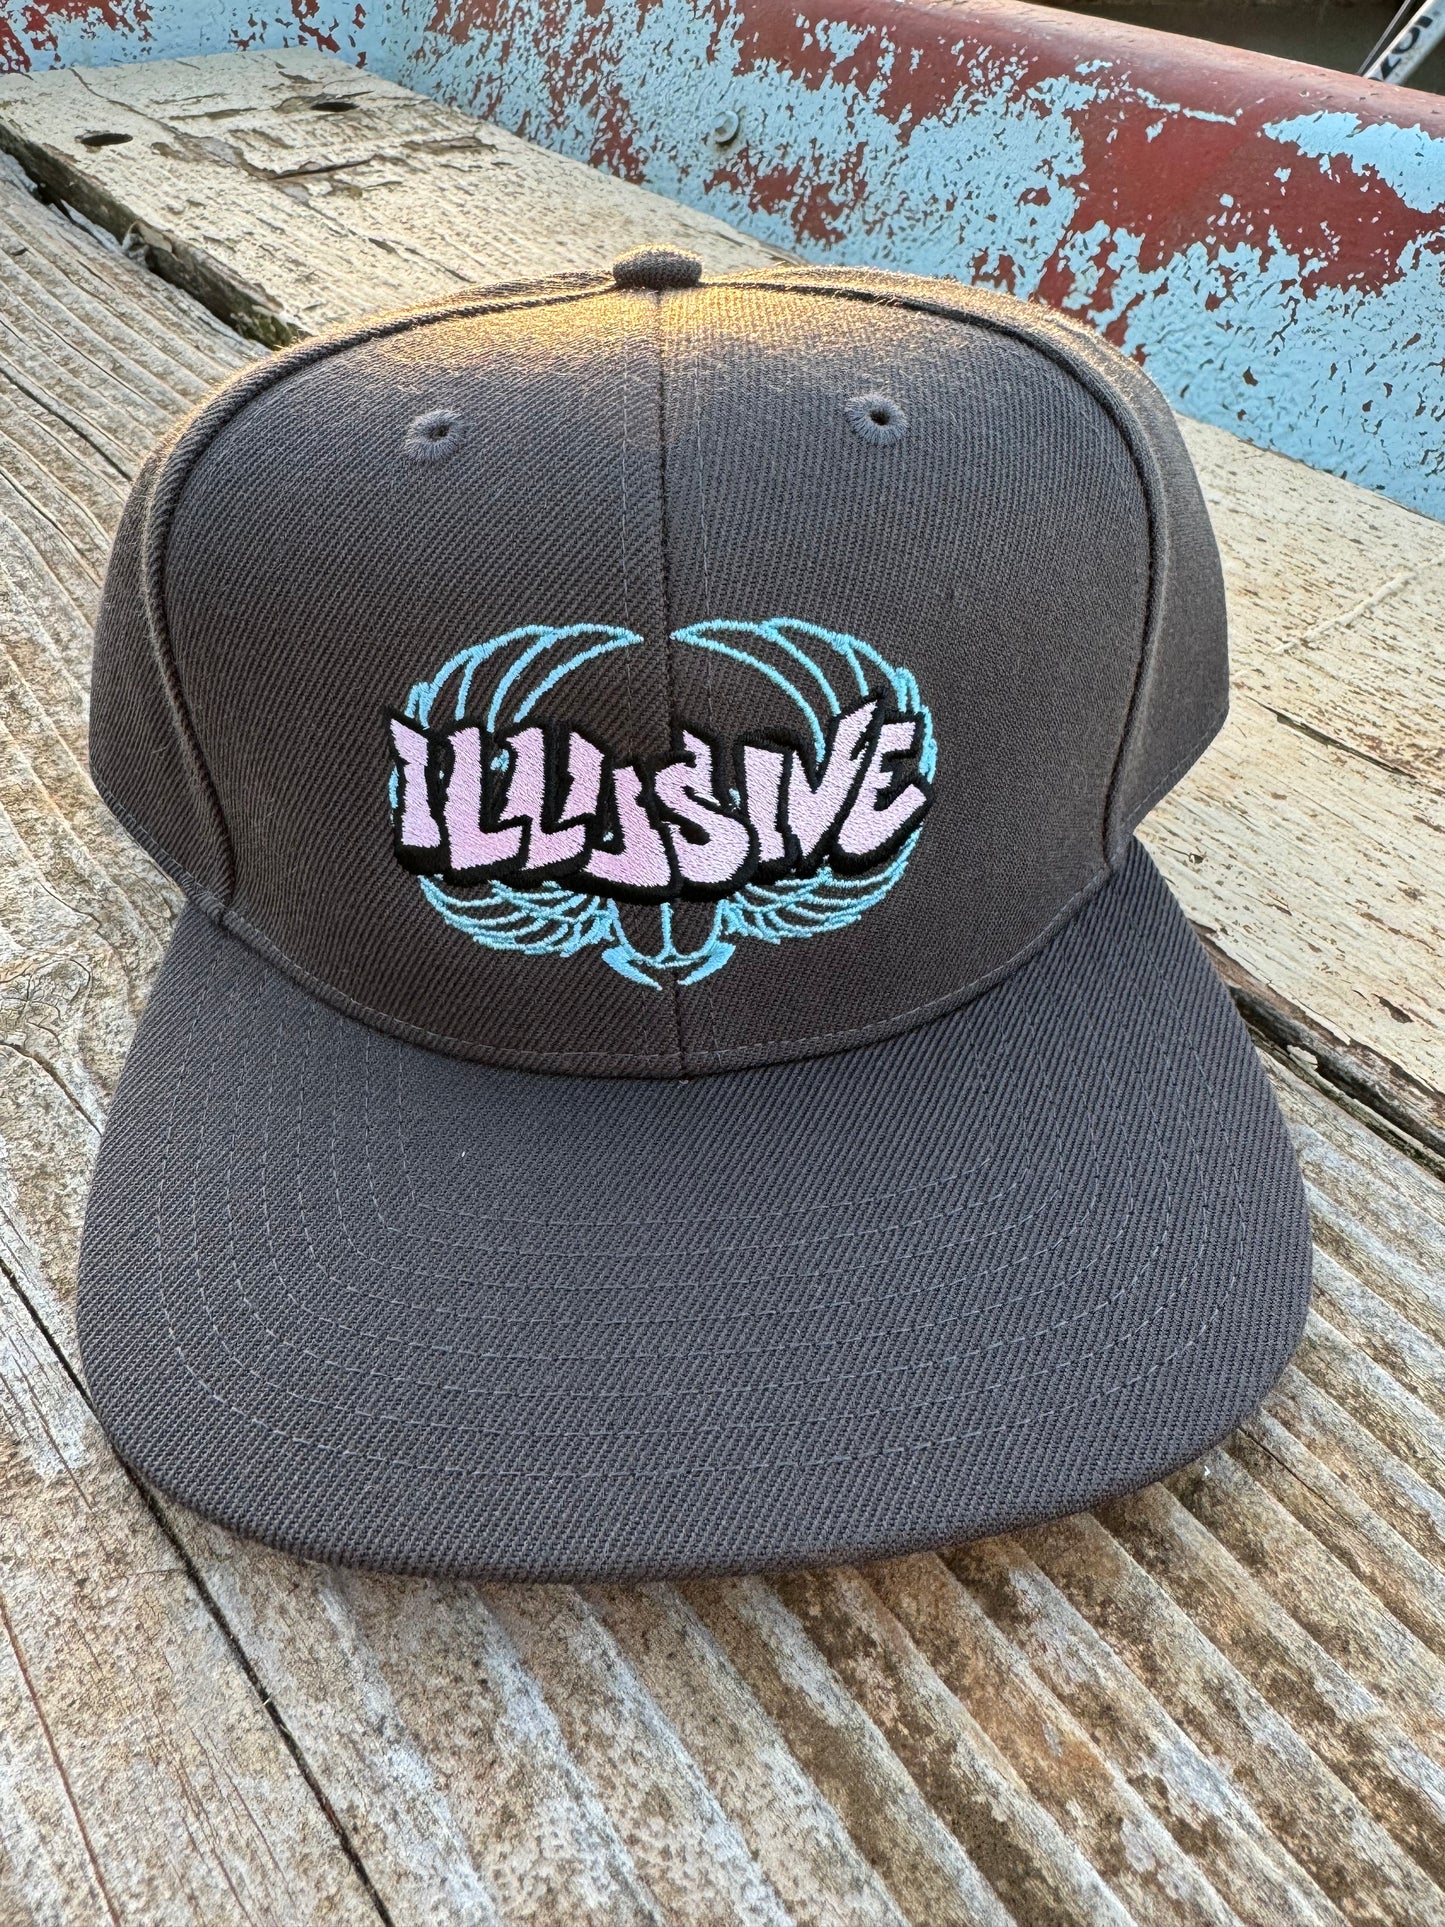 Pink illusive logo - Hats - Beanies - Bucket hats